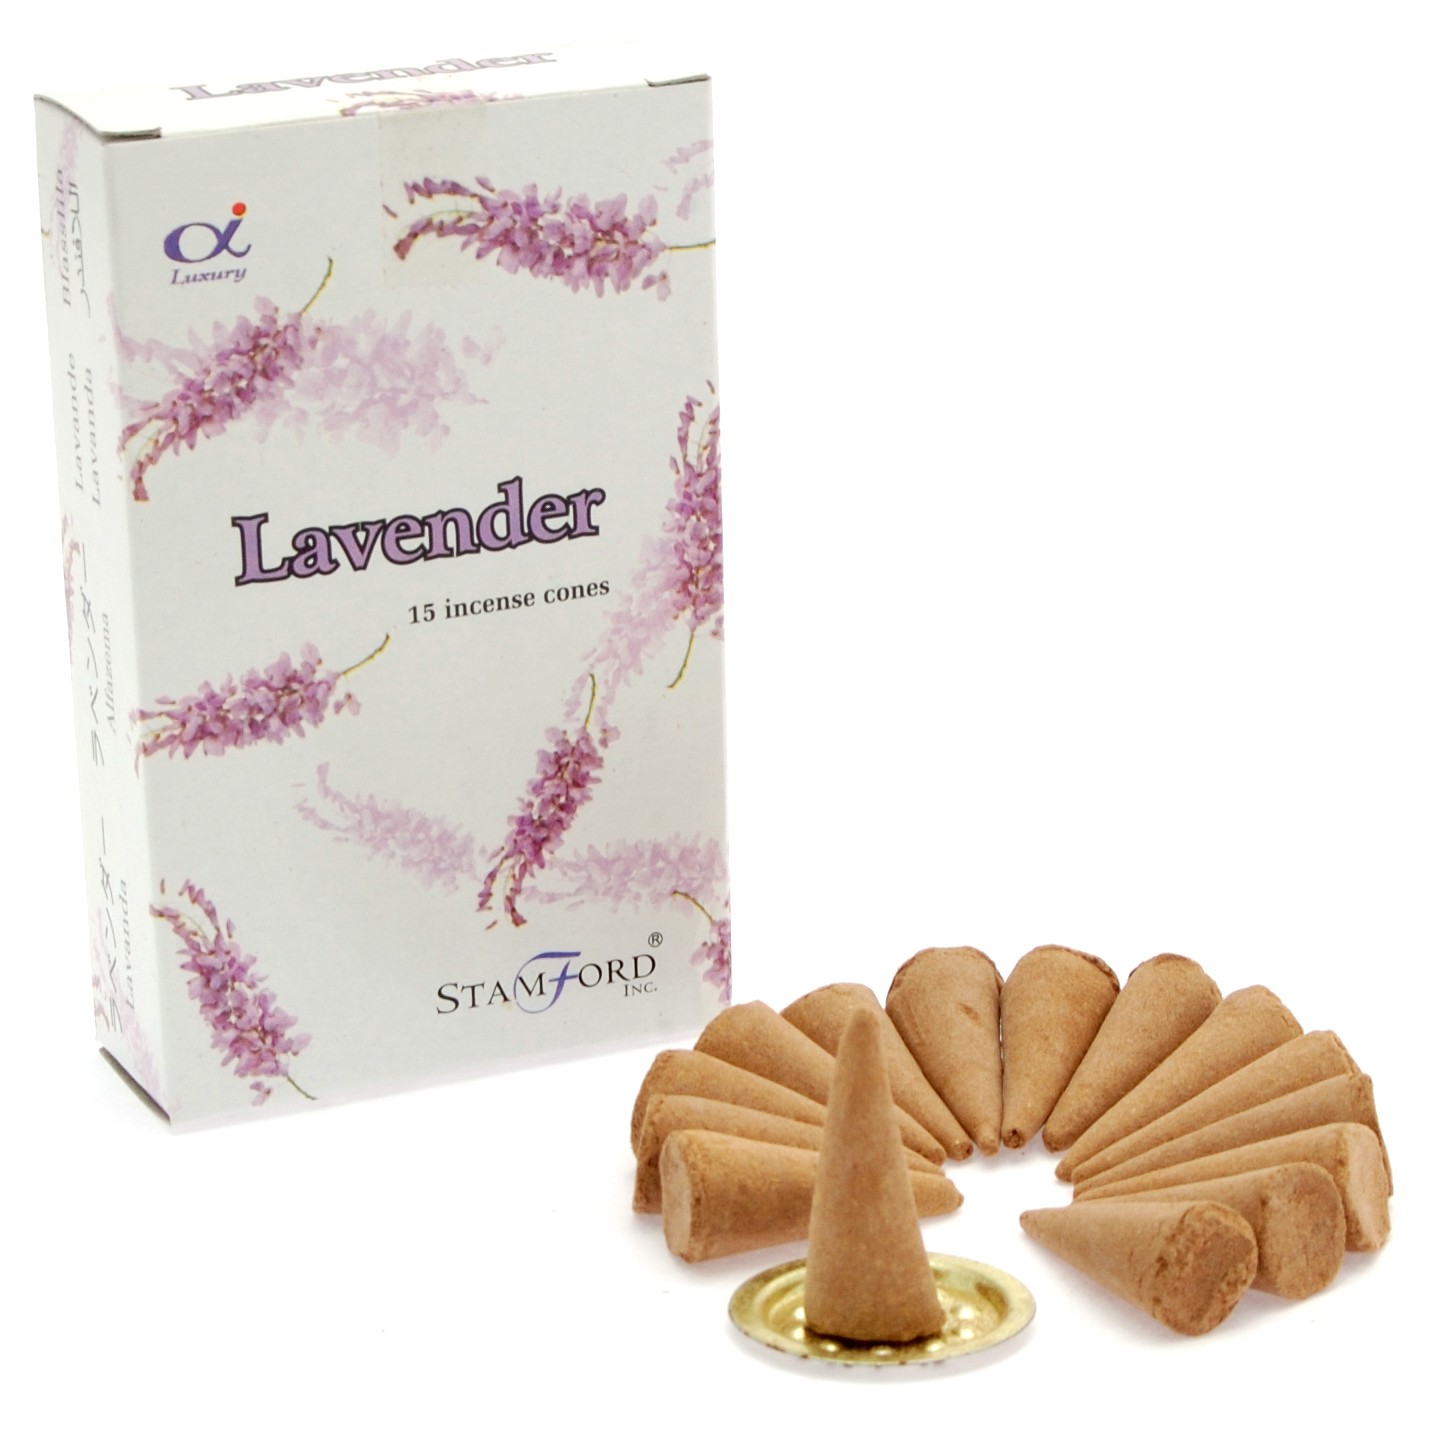 5 x Packs Premium Incense Cones - Lavender